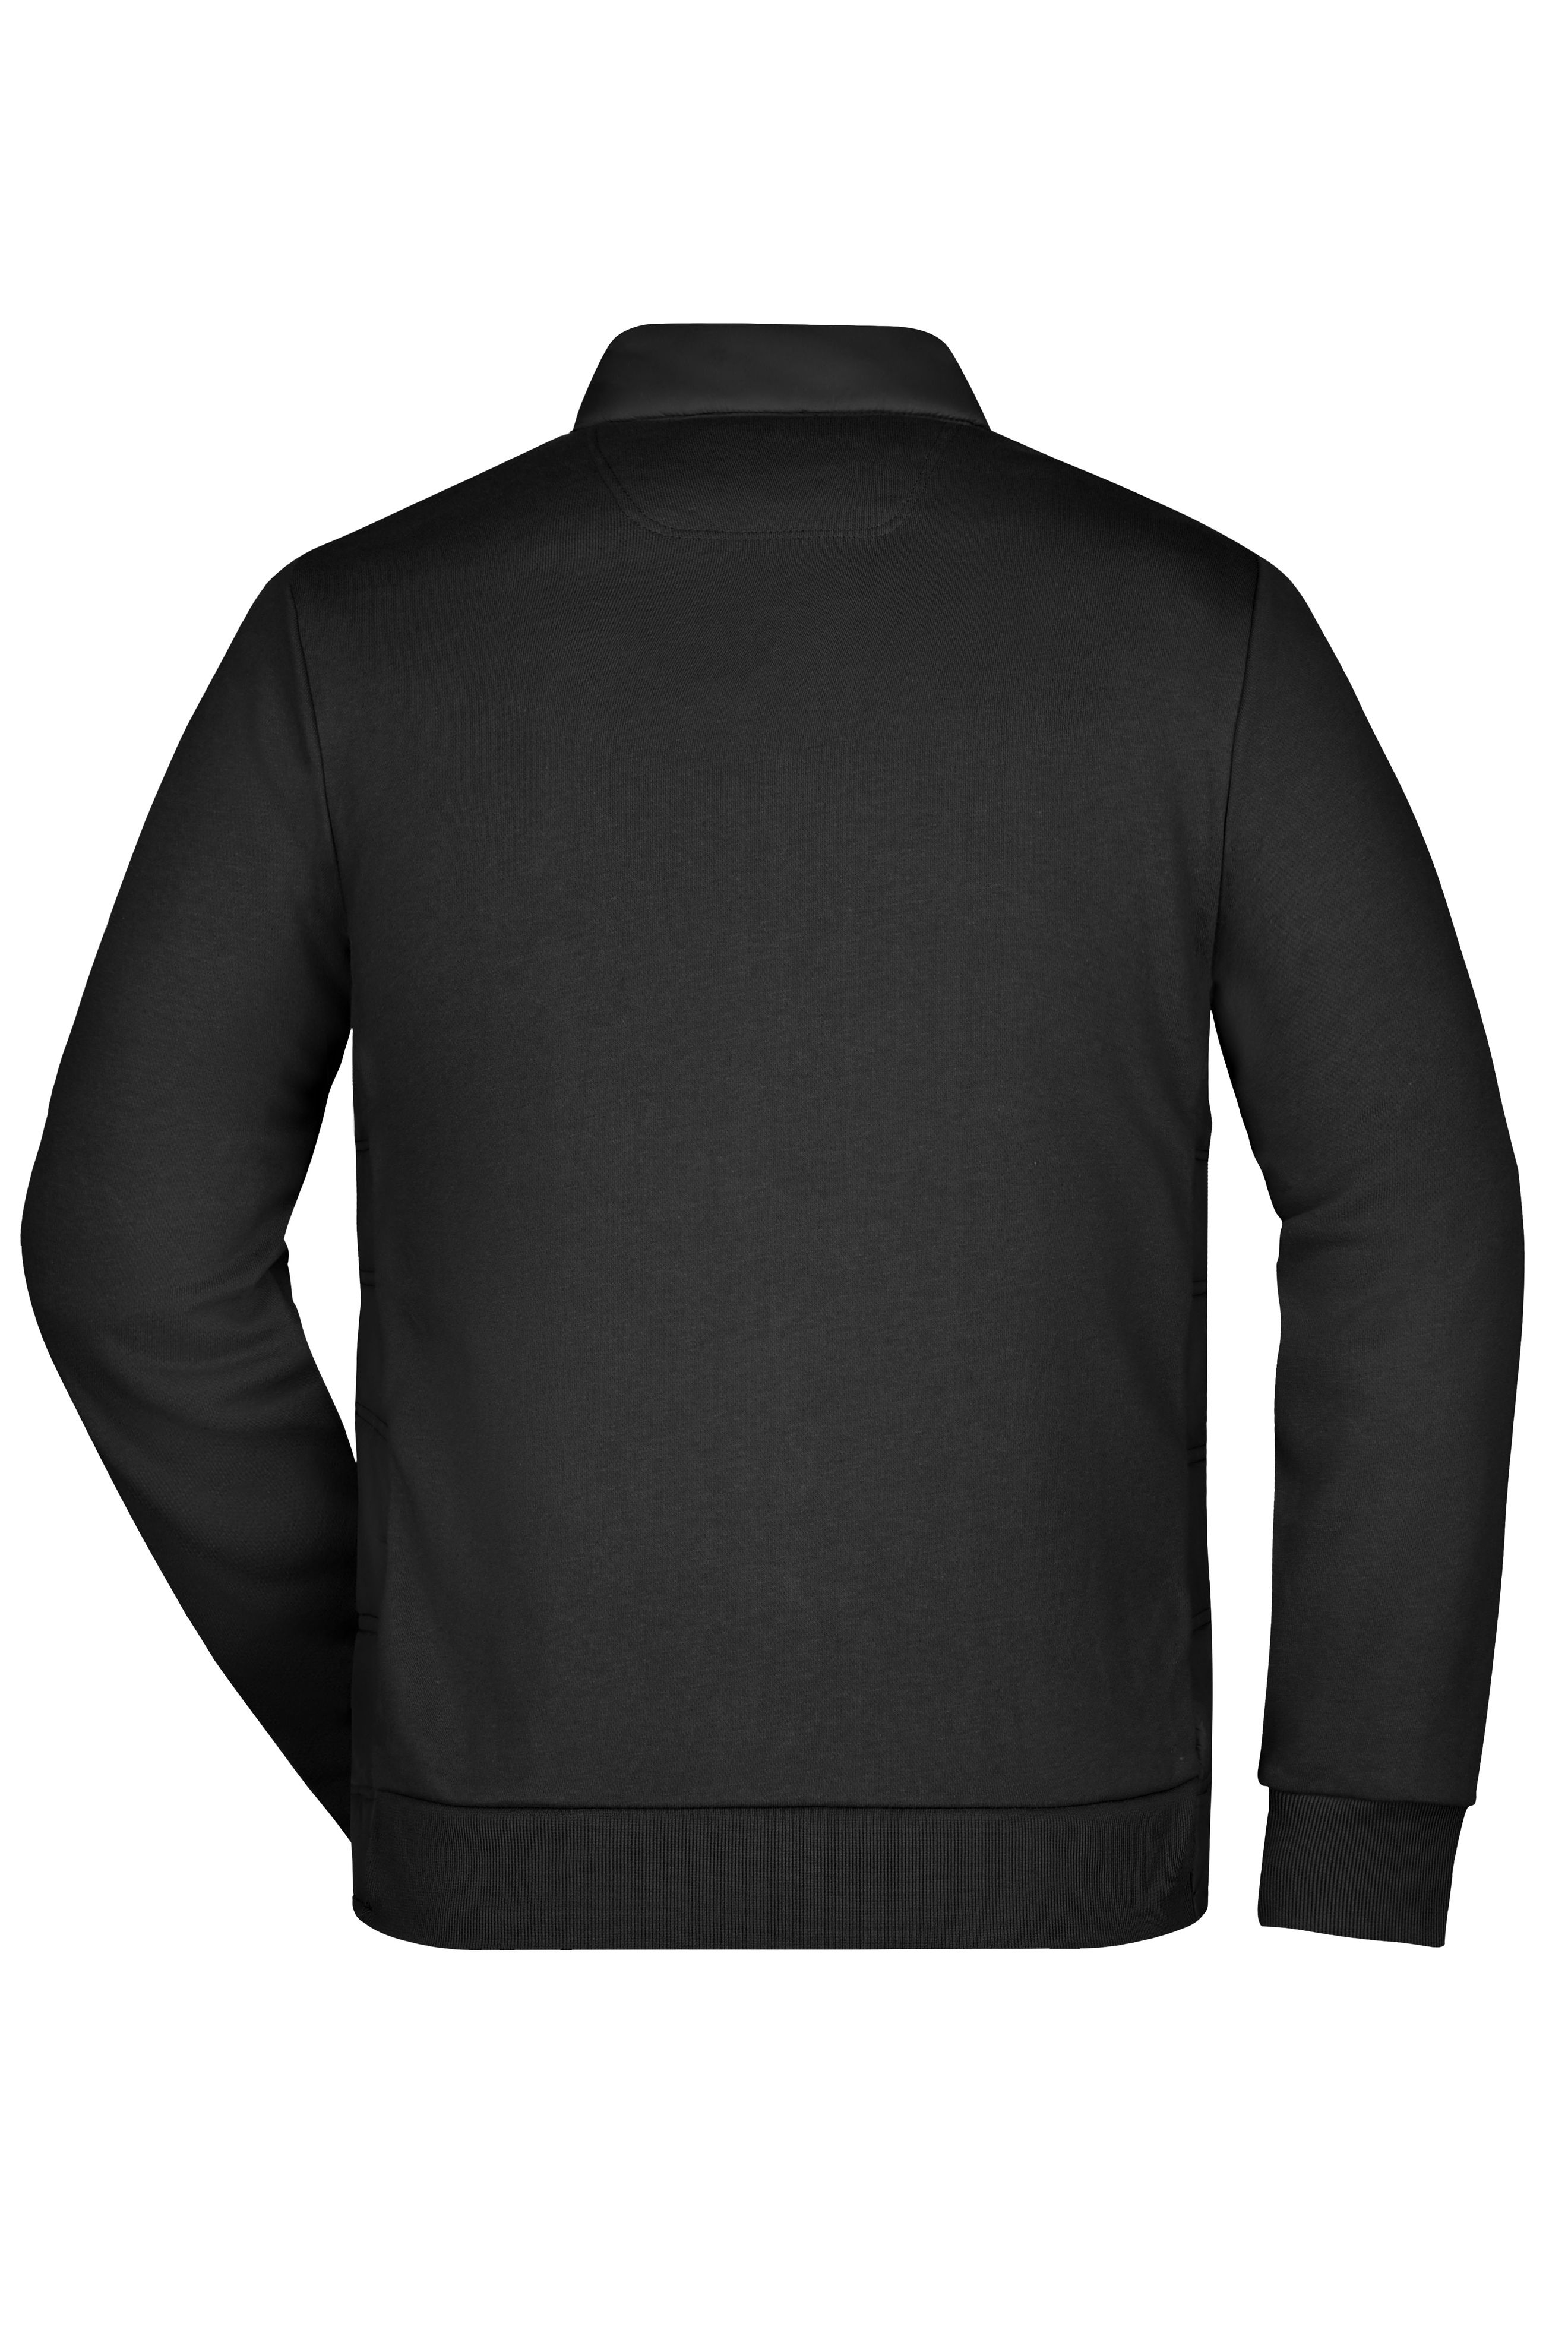 Men Men's Hybrid Sweat Jacket Black-Promotextilien.de